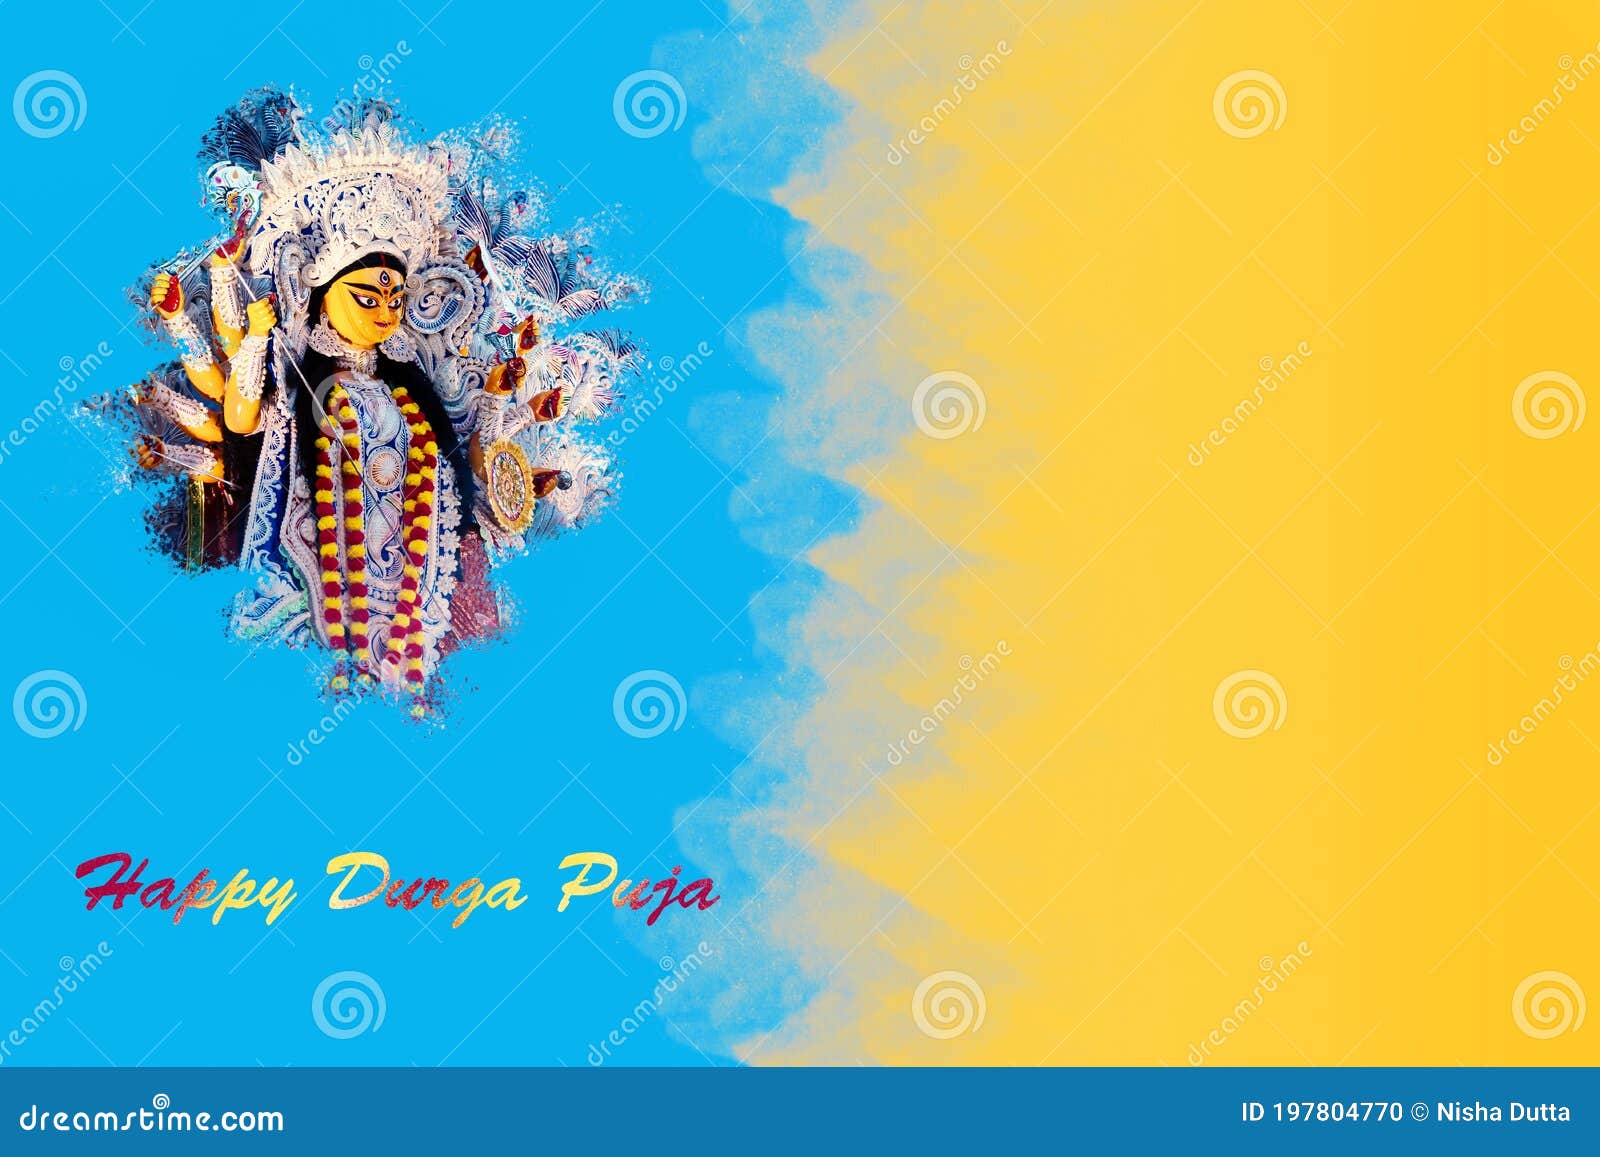 Happy Durga Puja Background Stock Photo  Image of blue celebrating  197804770